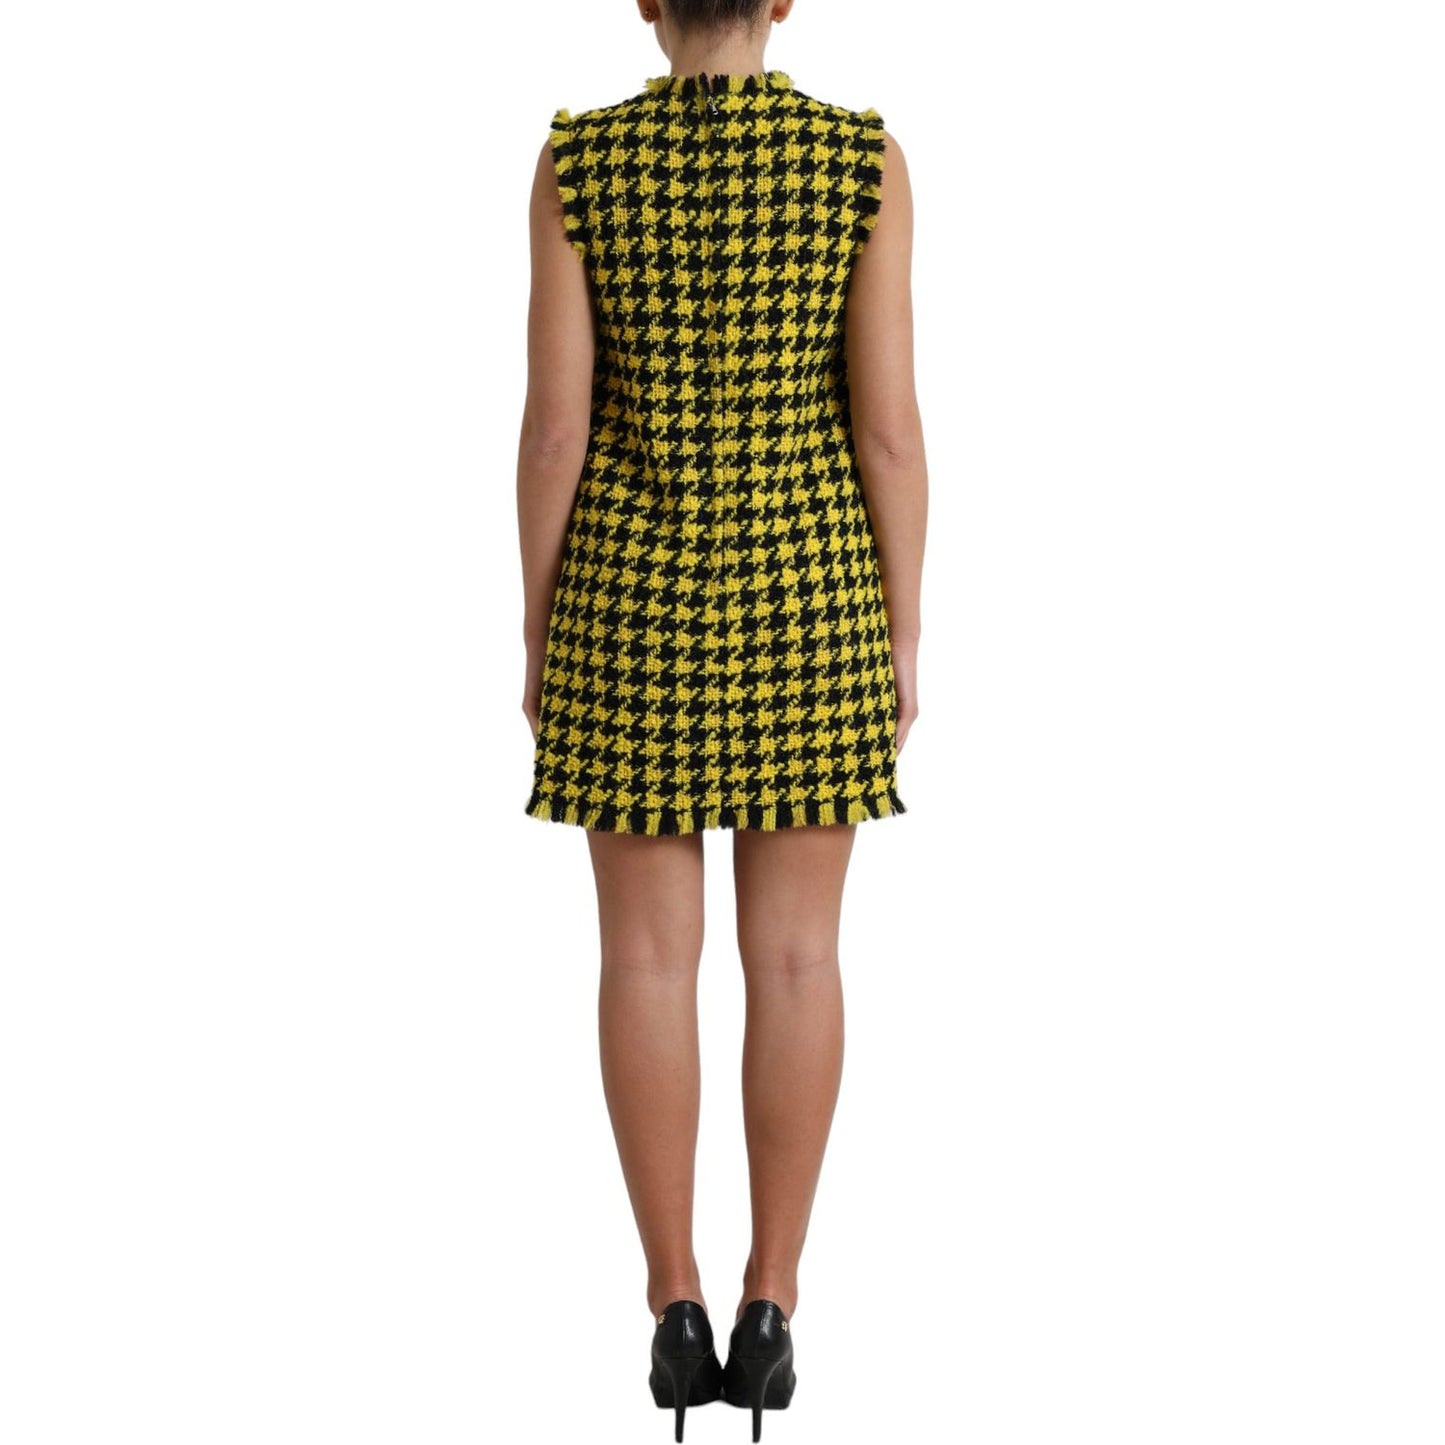 Dolce & Gabbana Houndstooth Knitted Chic Yellow Mini Skirt yellow-houndstooth-sleeveless-aline-mini-dress